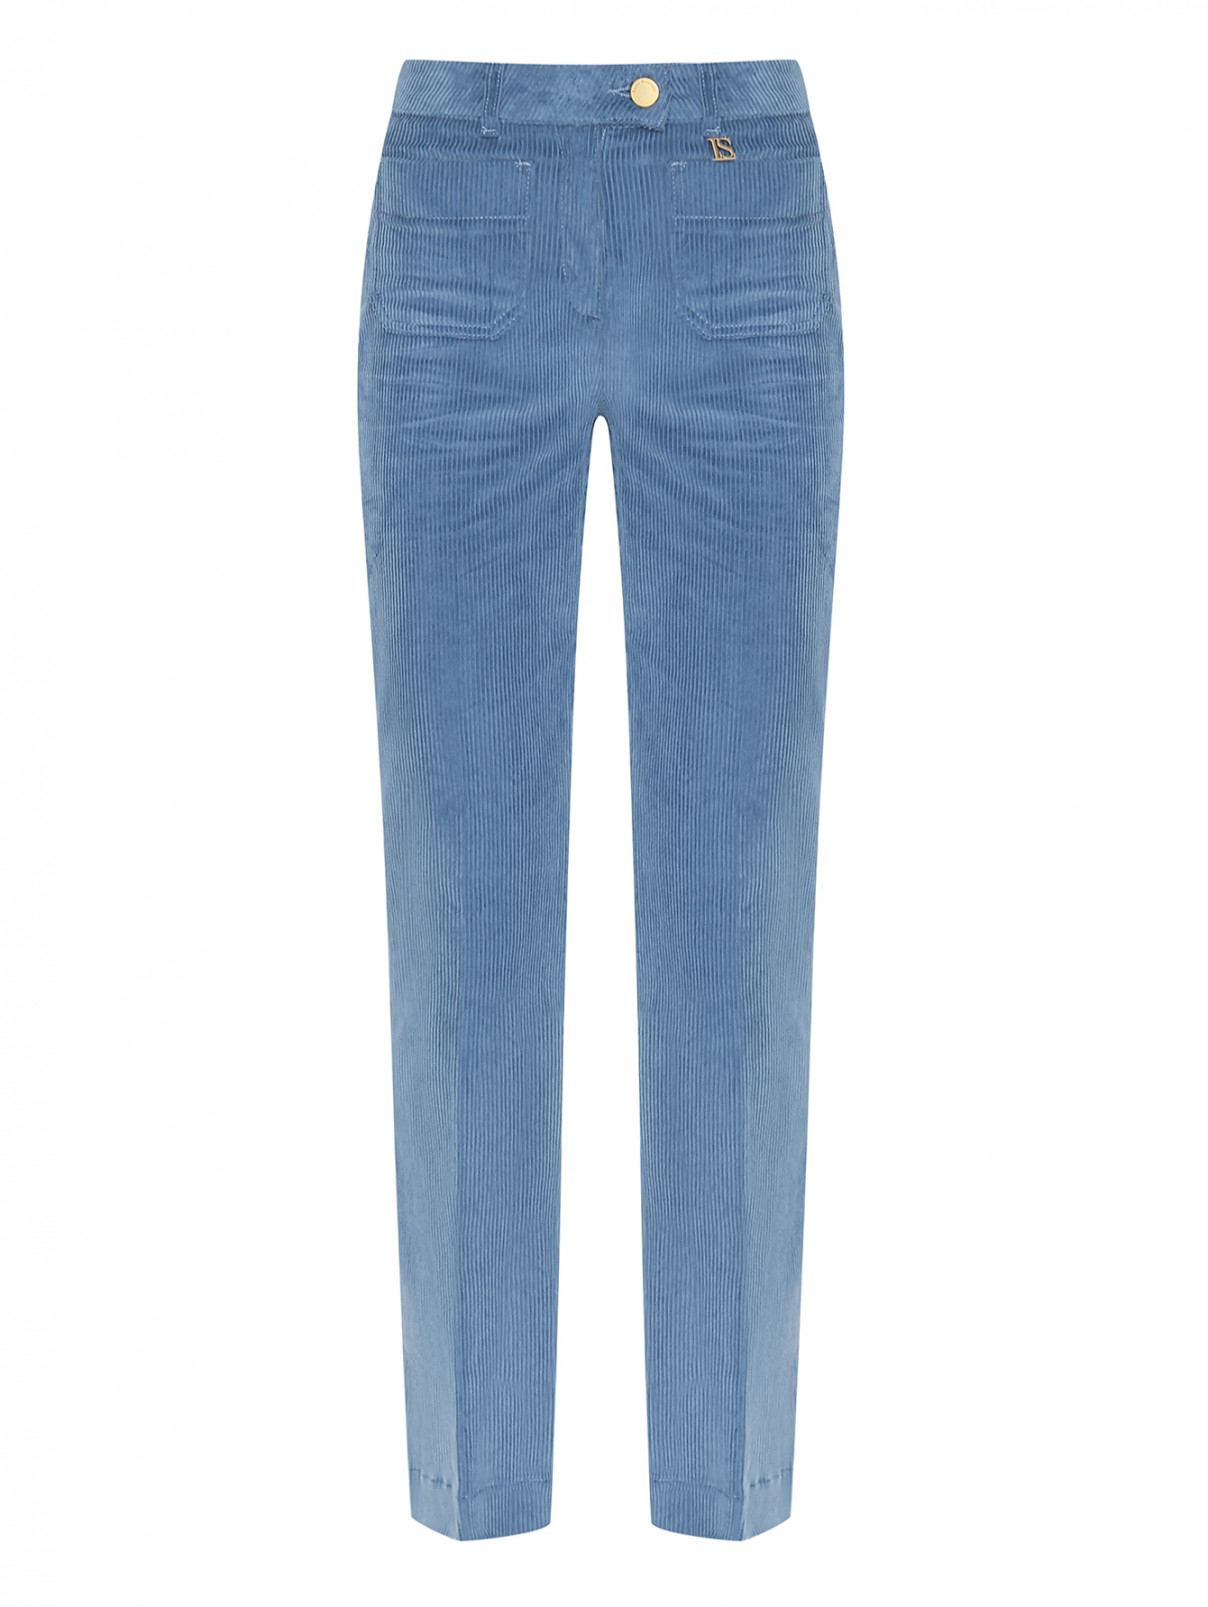 Вельветовые брюки из хлопка с карманами Luisa Spagnoli  –  Общий вид  – Цвет:  Синий